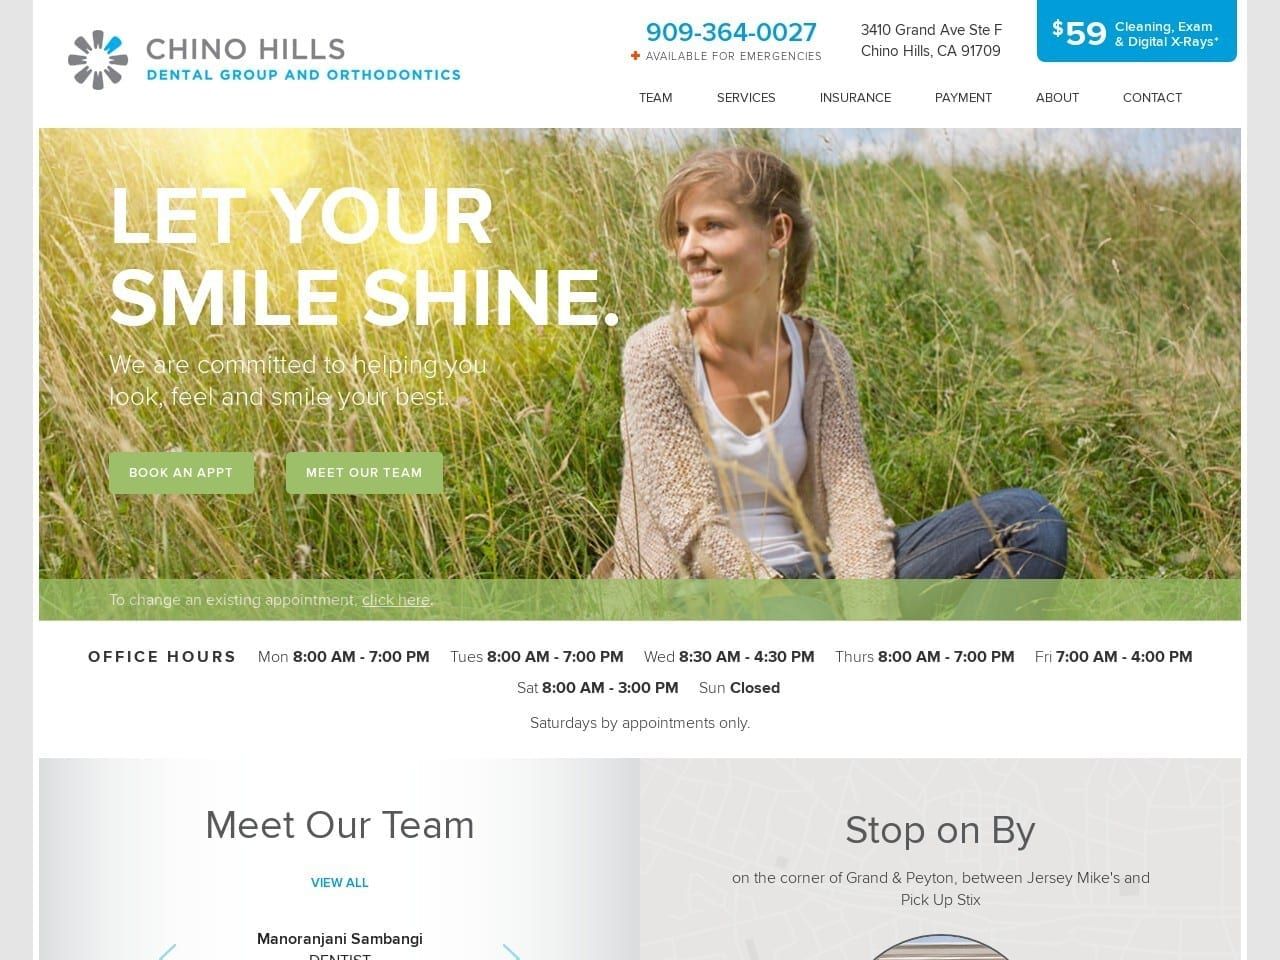 Chino Hills Dental Group Website Screenshot from chinohillsdental.com